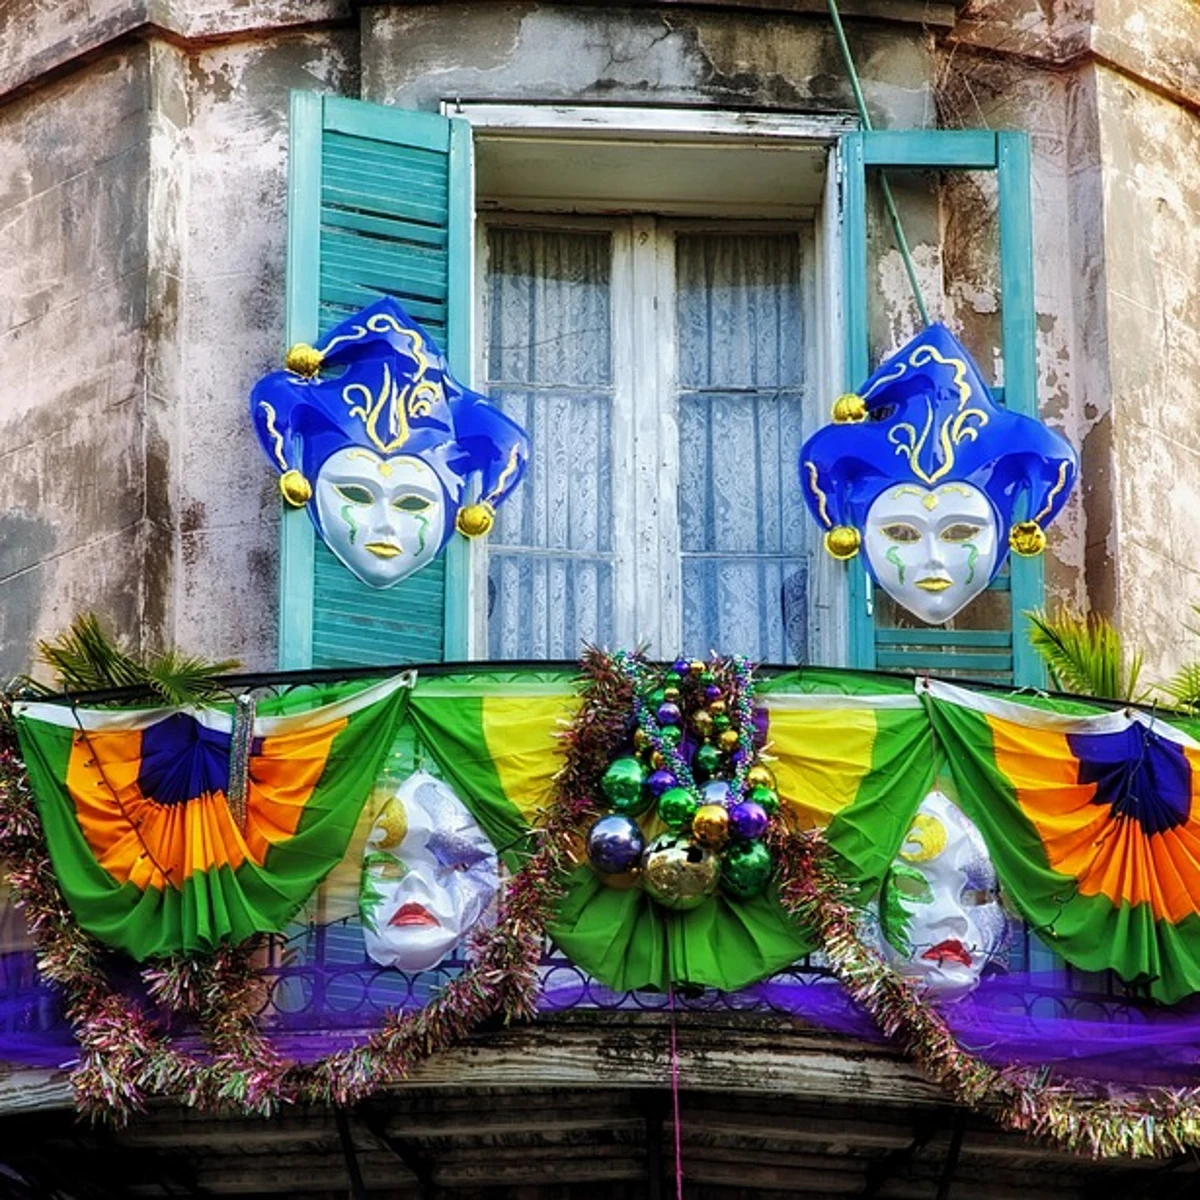 Carnaval Venecia Máscara Puente De - Foto gratis en Pixabay - Pixabay